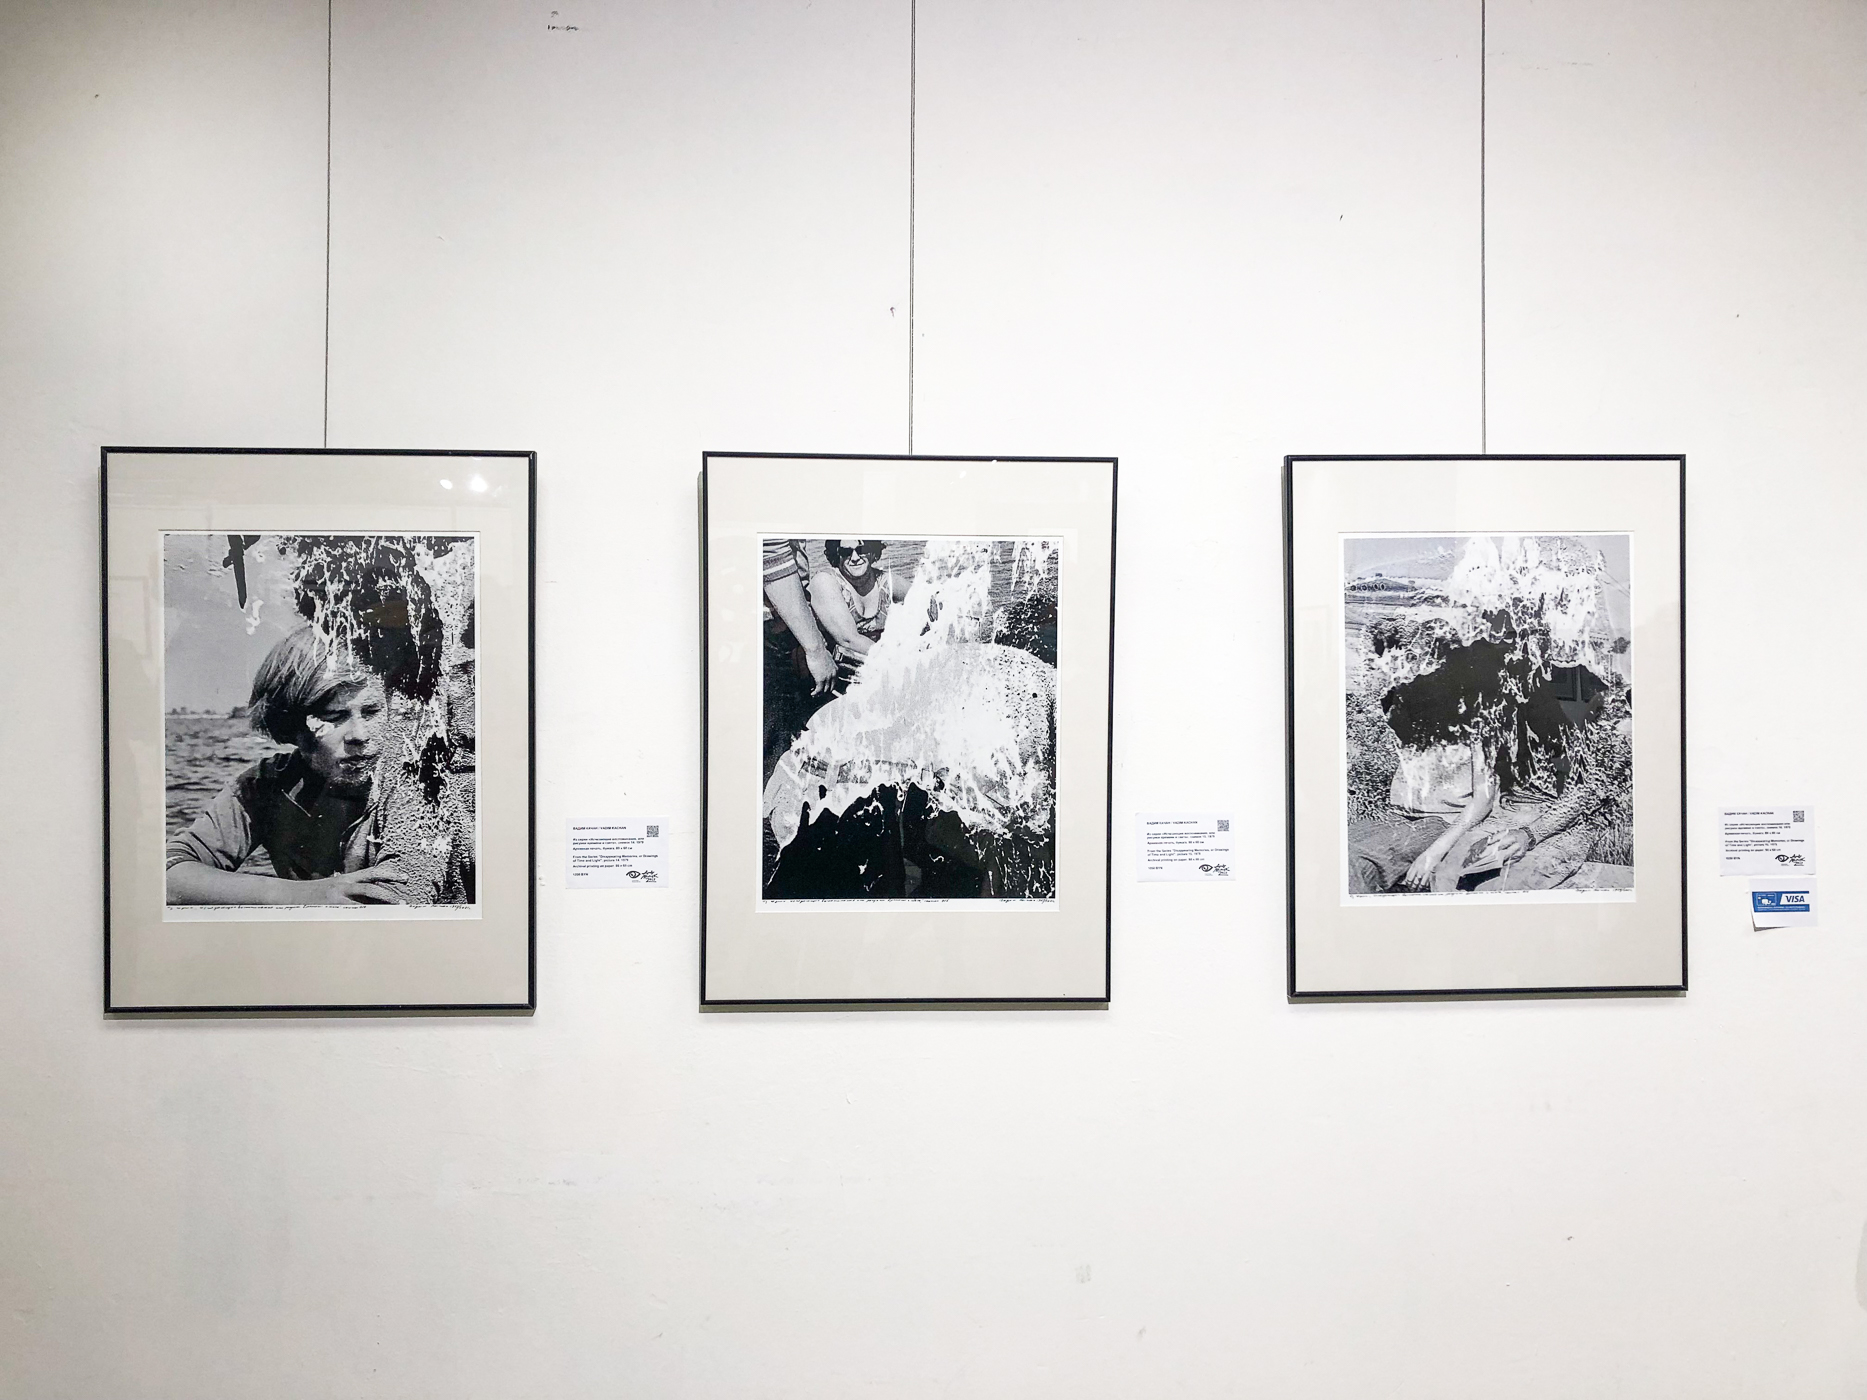  Три снимка из серии "Исчезающие воспоминания или рисунки времени и света на выставке Арт Минск 2021